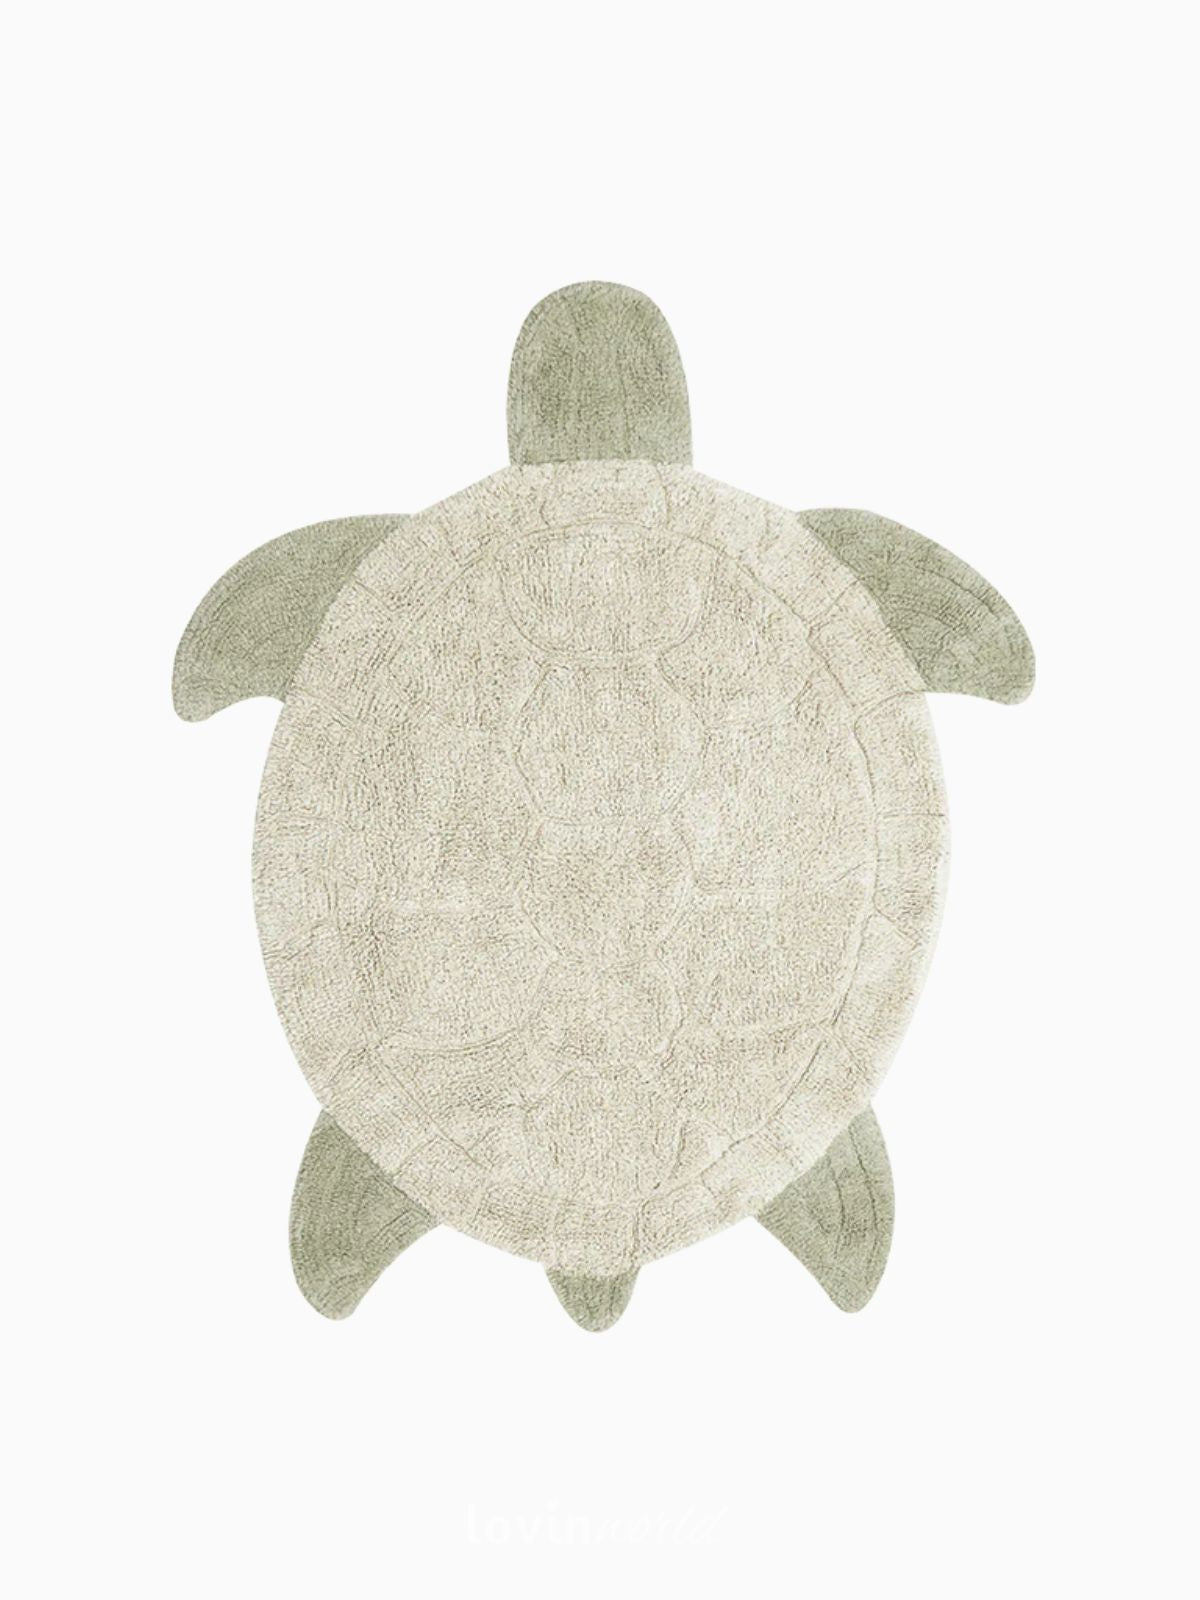 Tappeto in cotone lavabile Sea Turtle 110x130 cm.-1